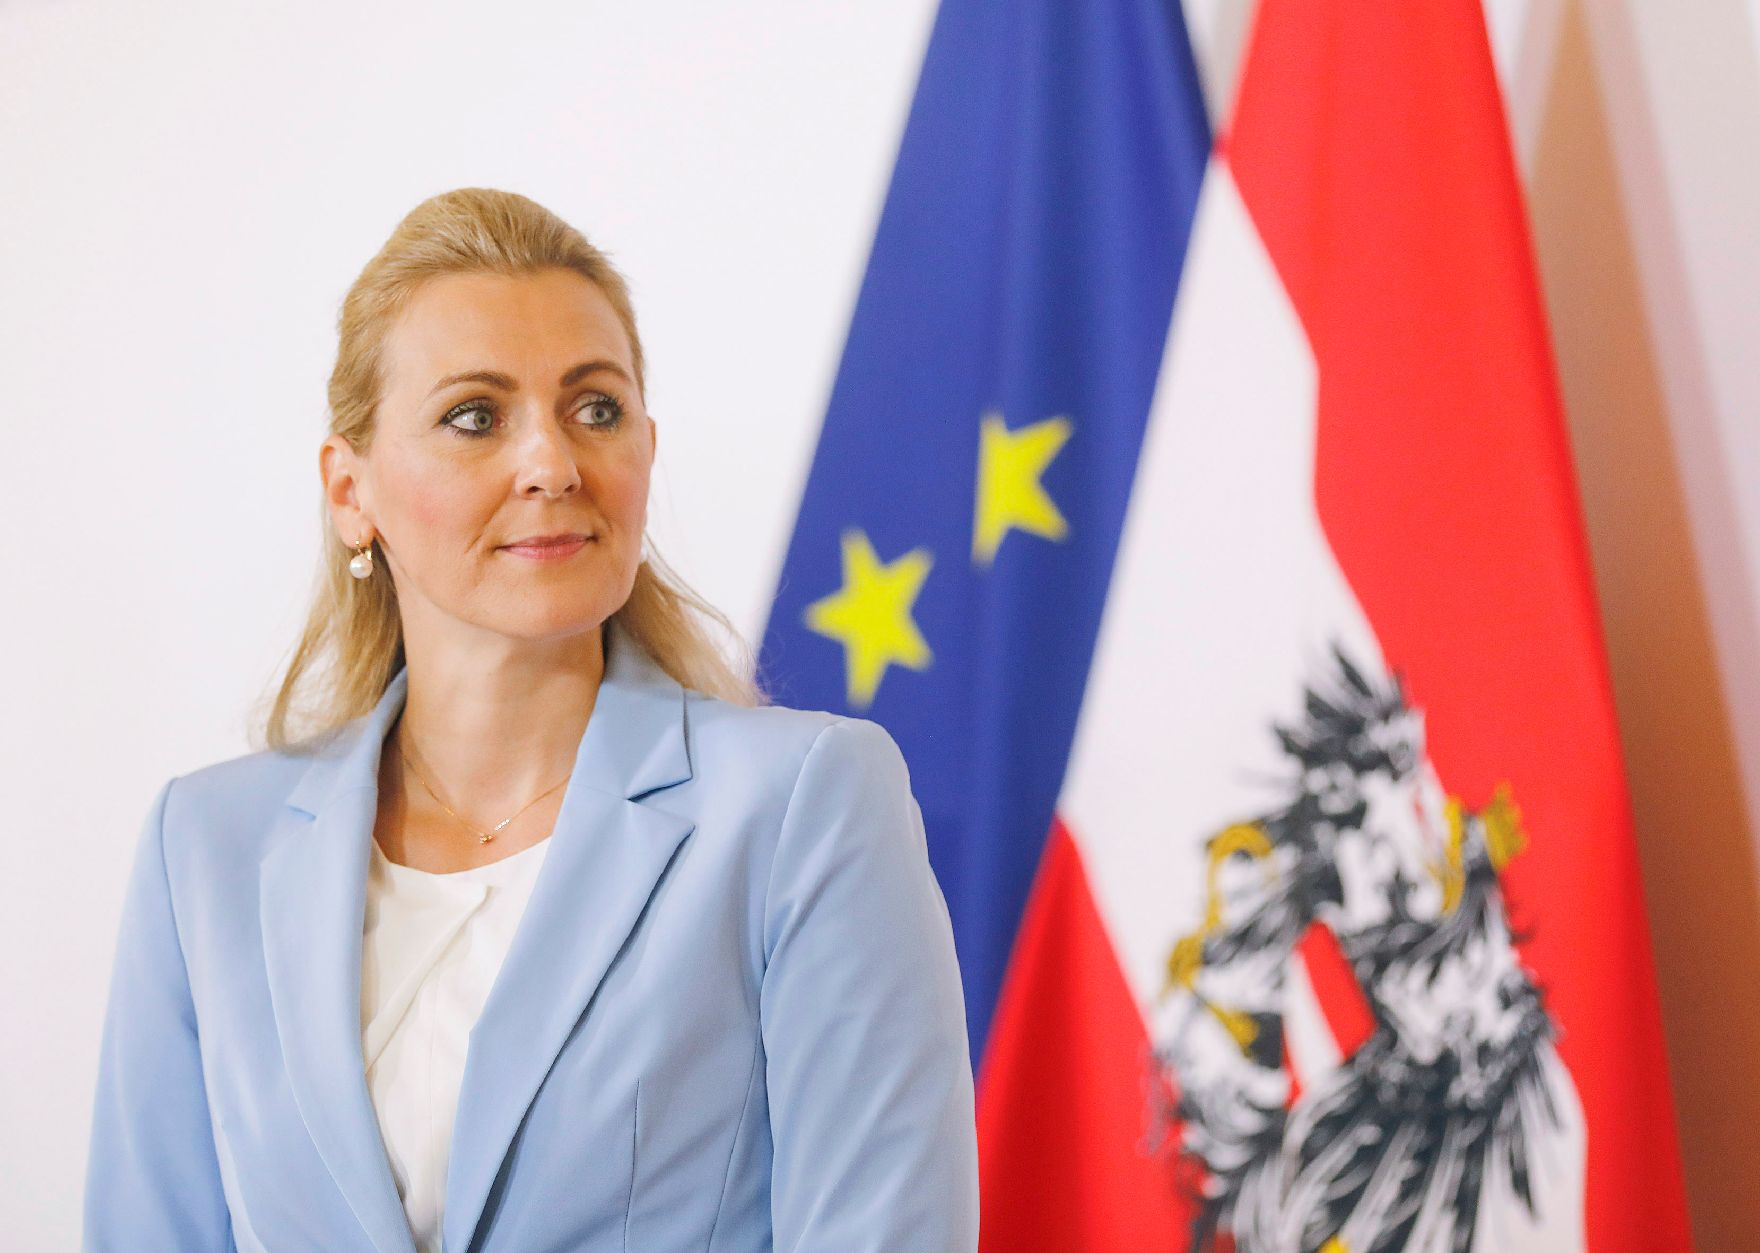 Am 29. September 2020 fand ein Pressestatement zu den Maßnahmen gegen die Krise im Bundeskanzleramt statt. Im Bild Bundesministerin Christine Aschbacher.